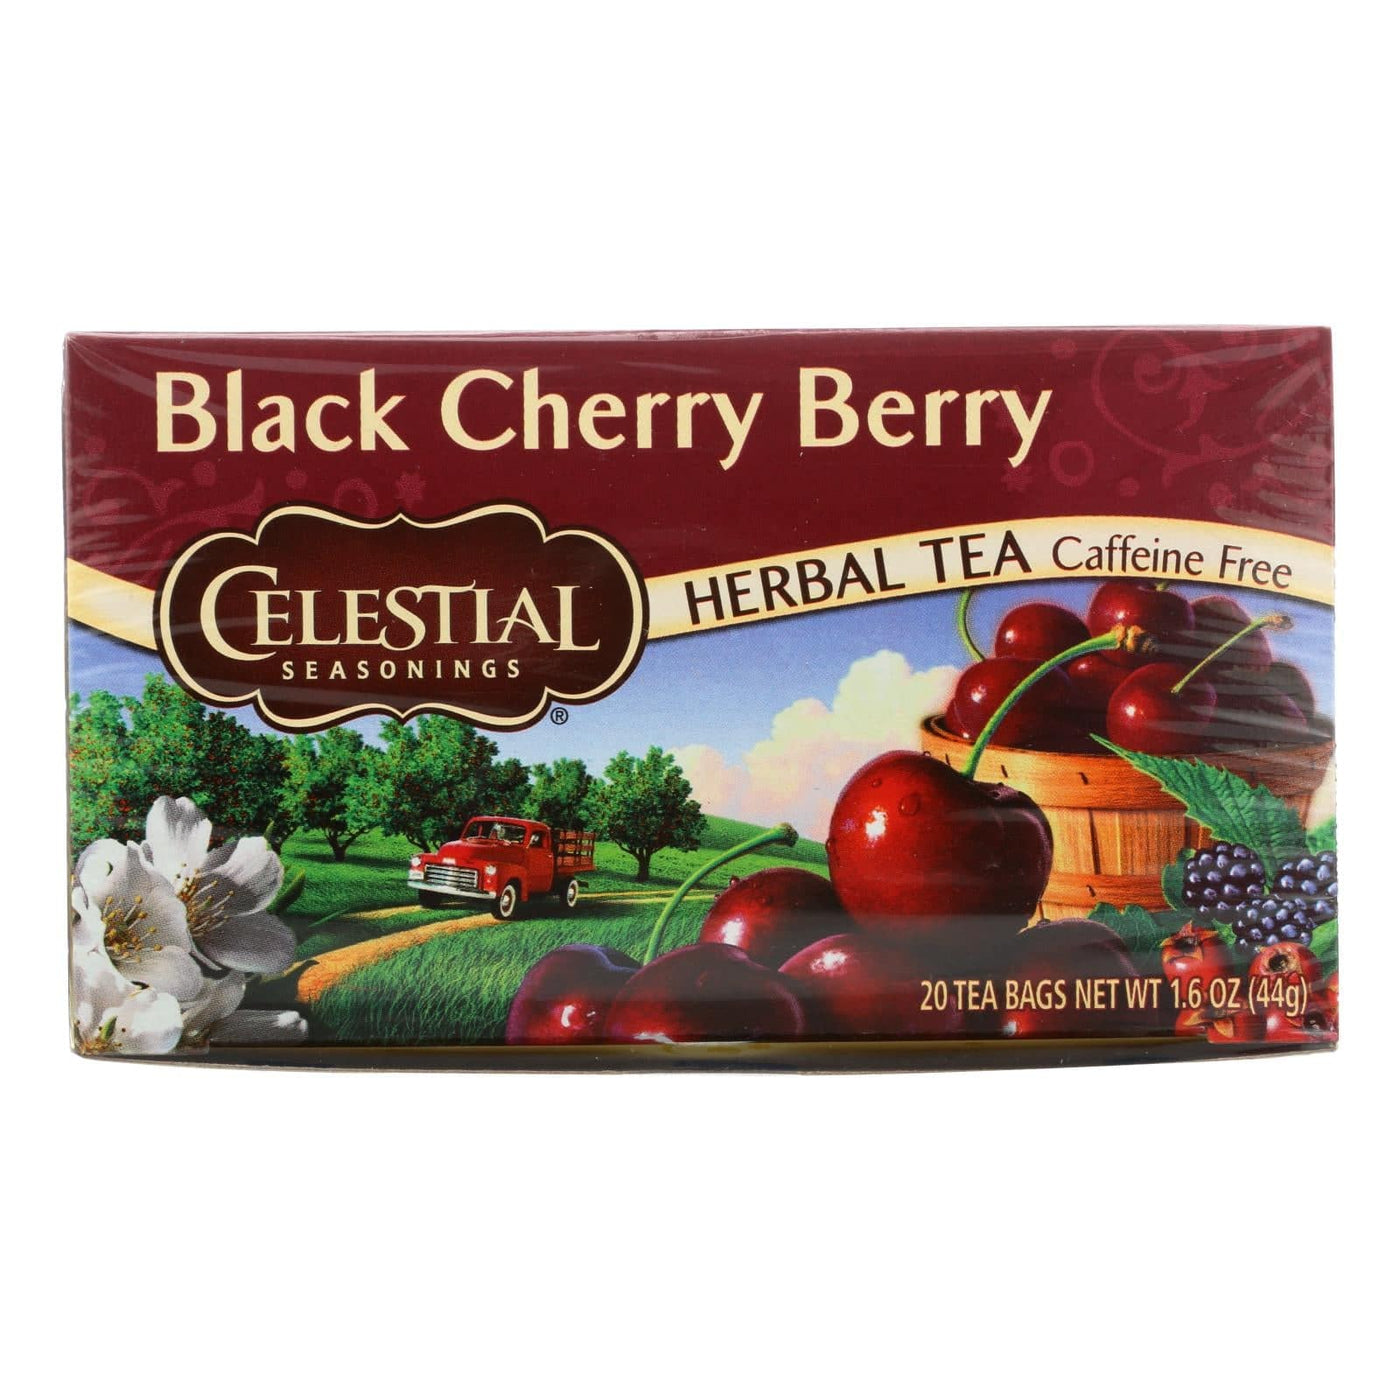 Celestial Seasonings Herbal Tea Caffeine Free Black Cherry Berry - 20 Tea Bags - Case Of 6 | OnlyNaturals.us